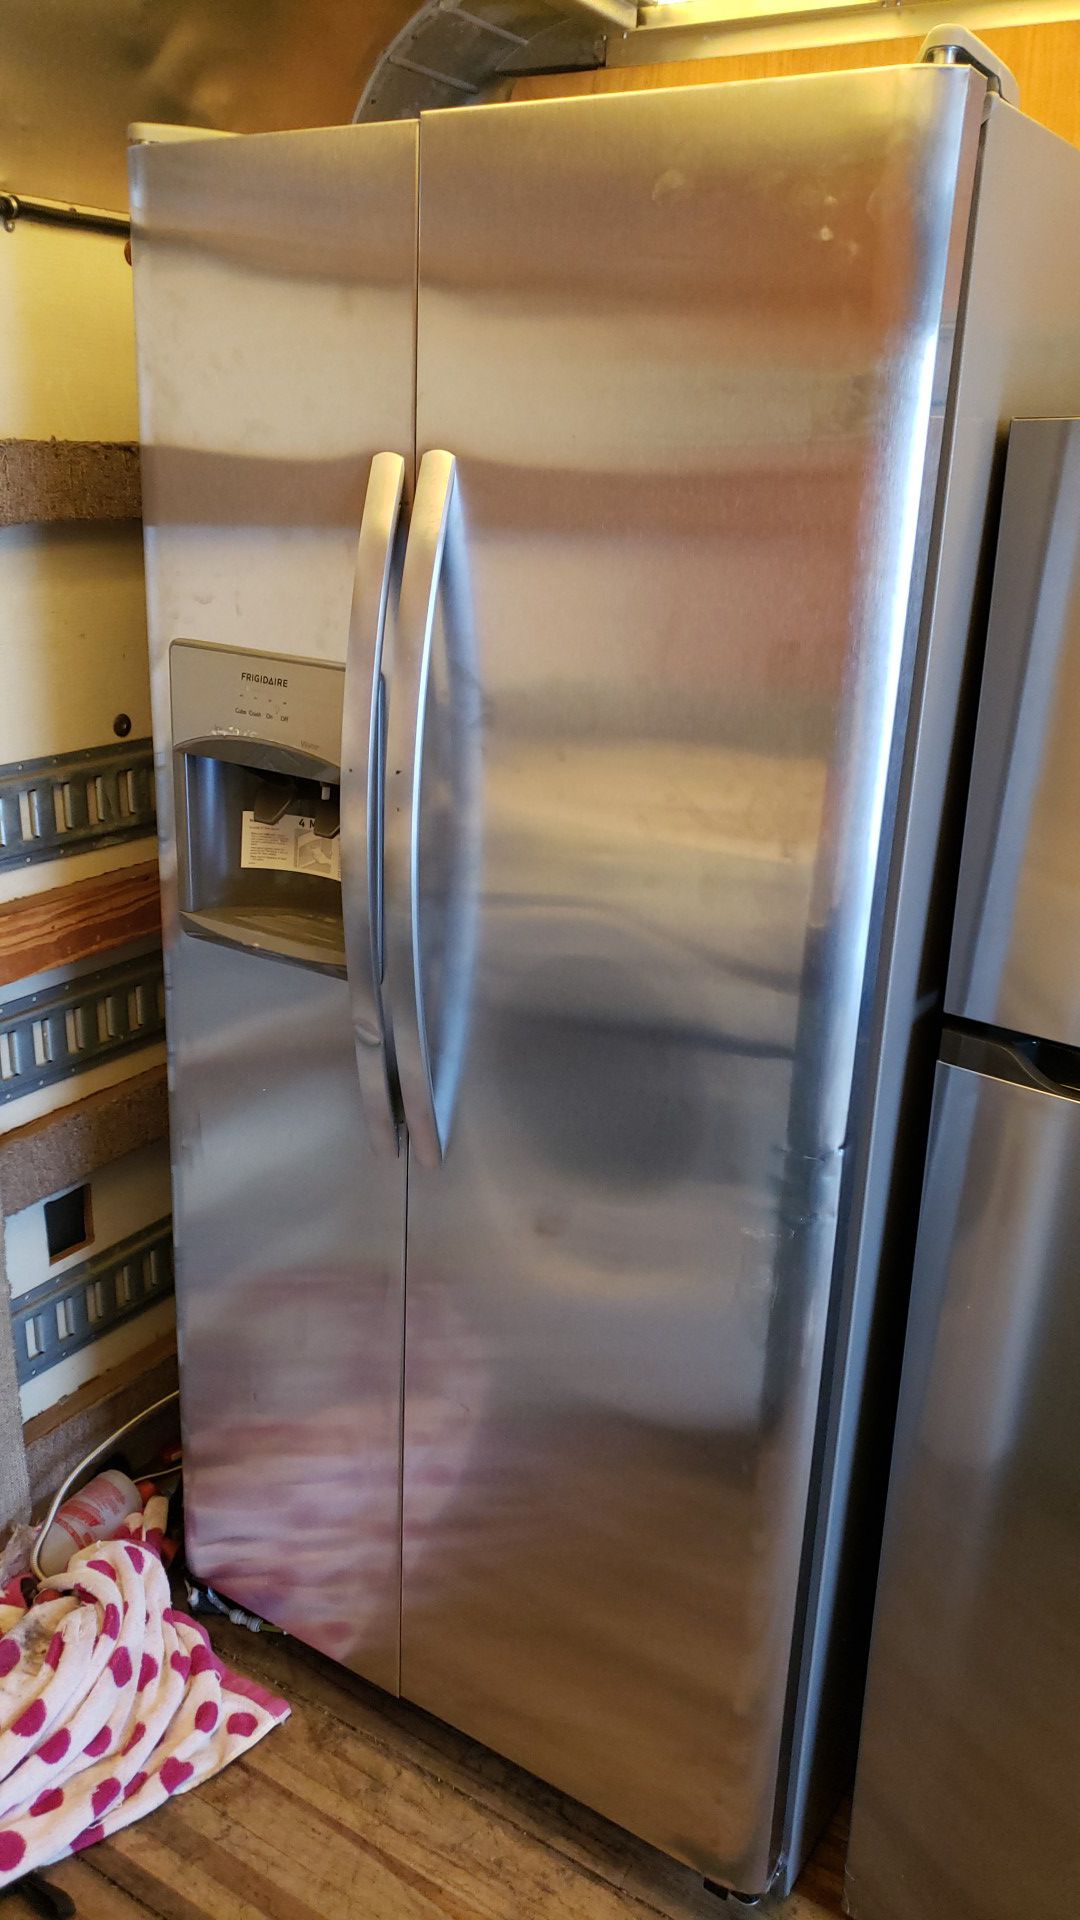 New Frigidaire Refrigerator 33" wide